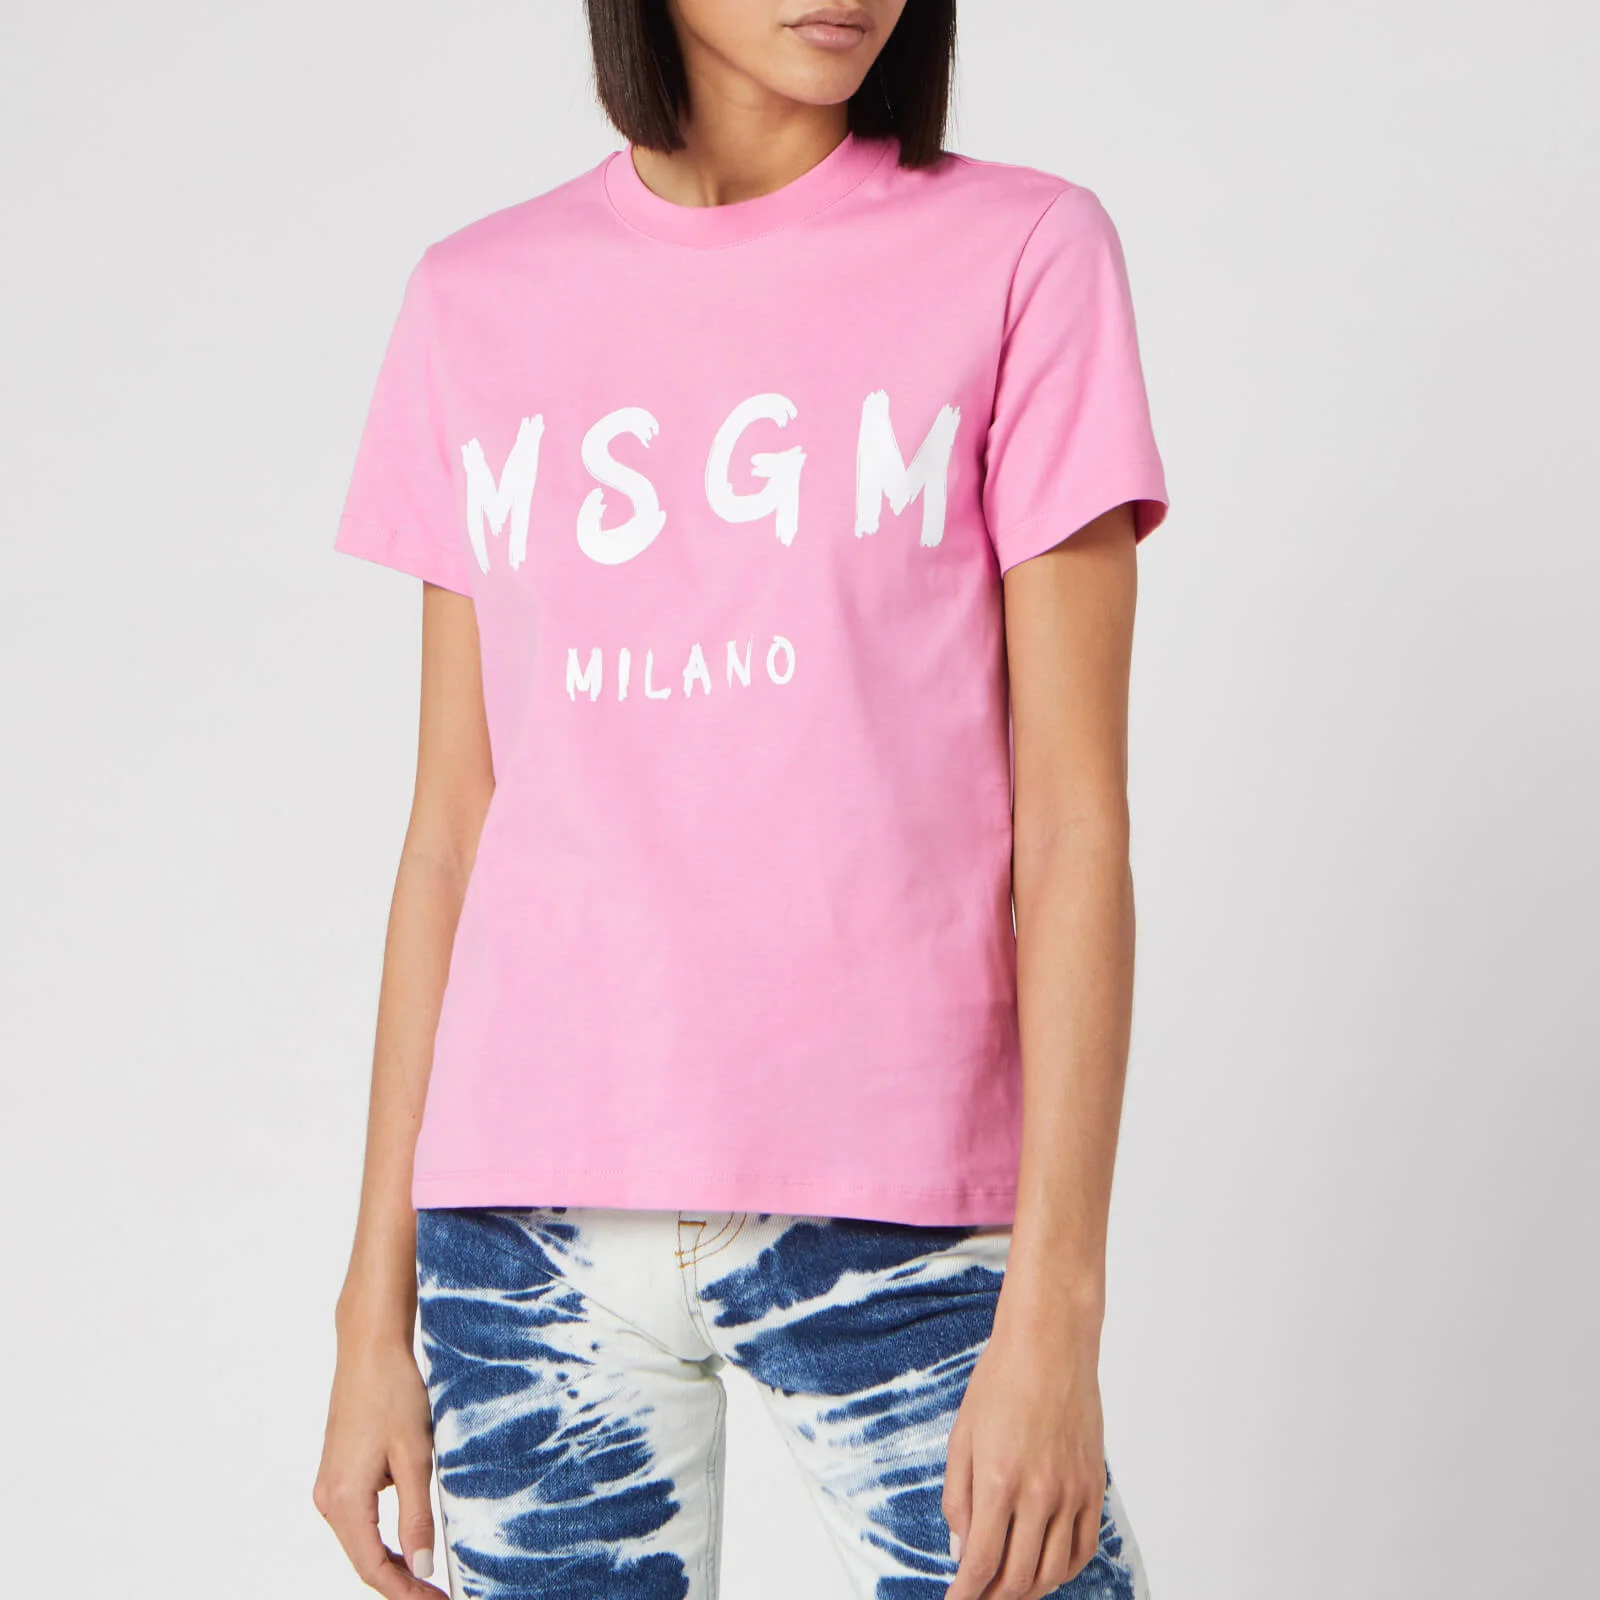 MSGM Women's Graffiti Logo T-Shirt - Pink Image 1